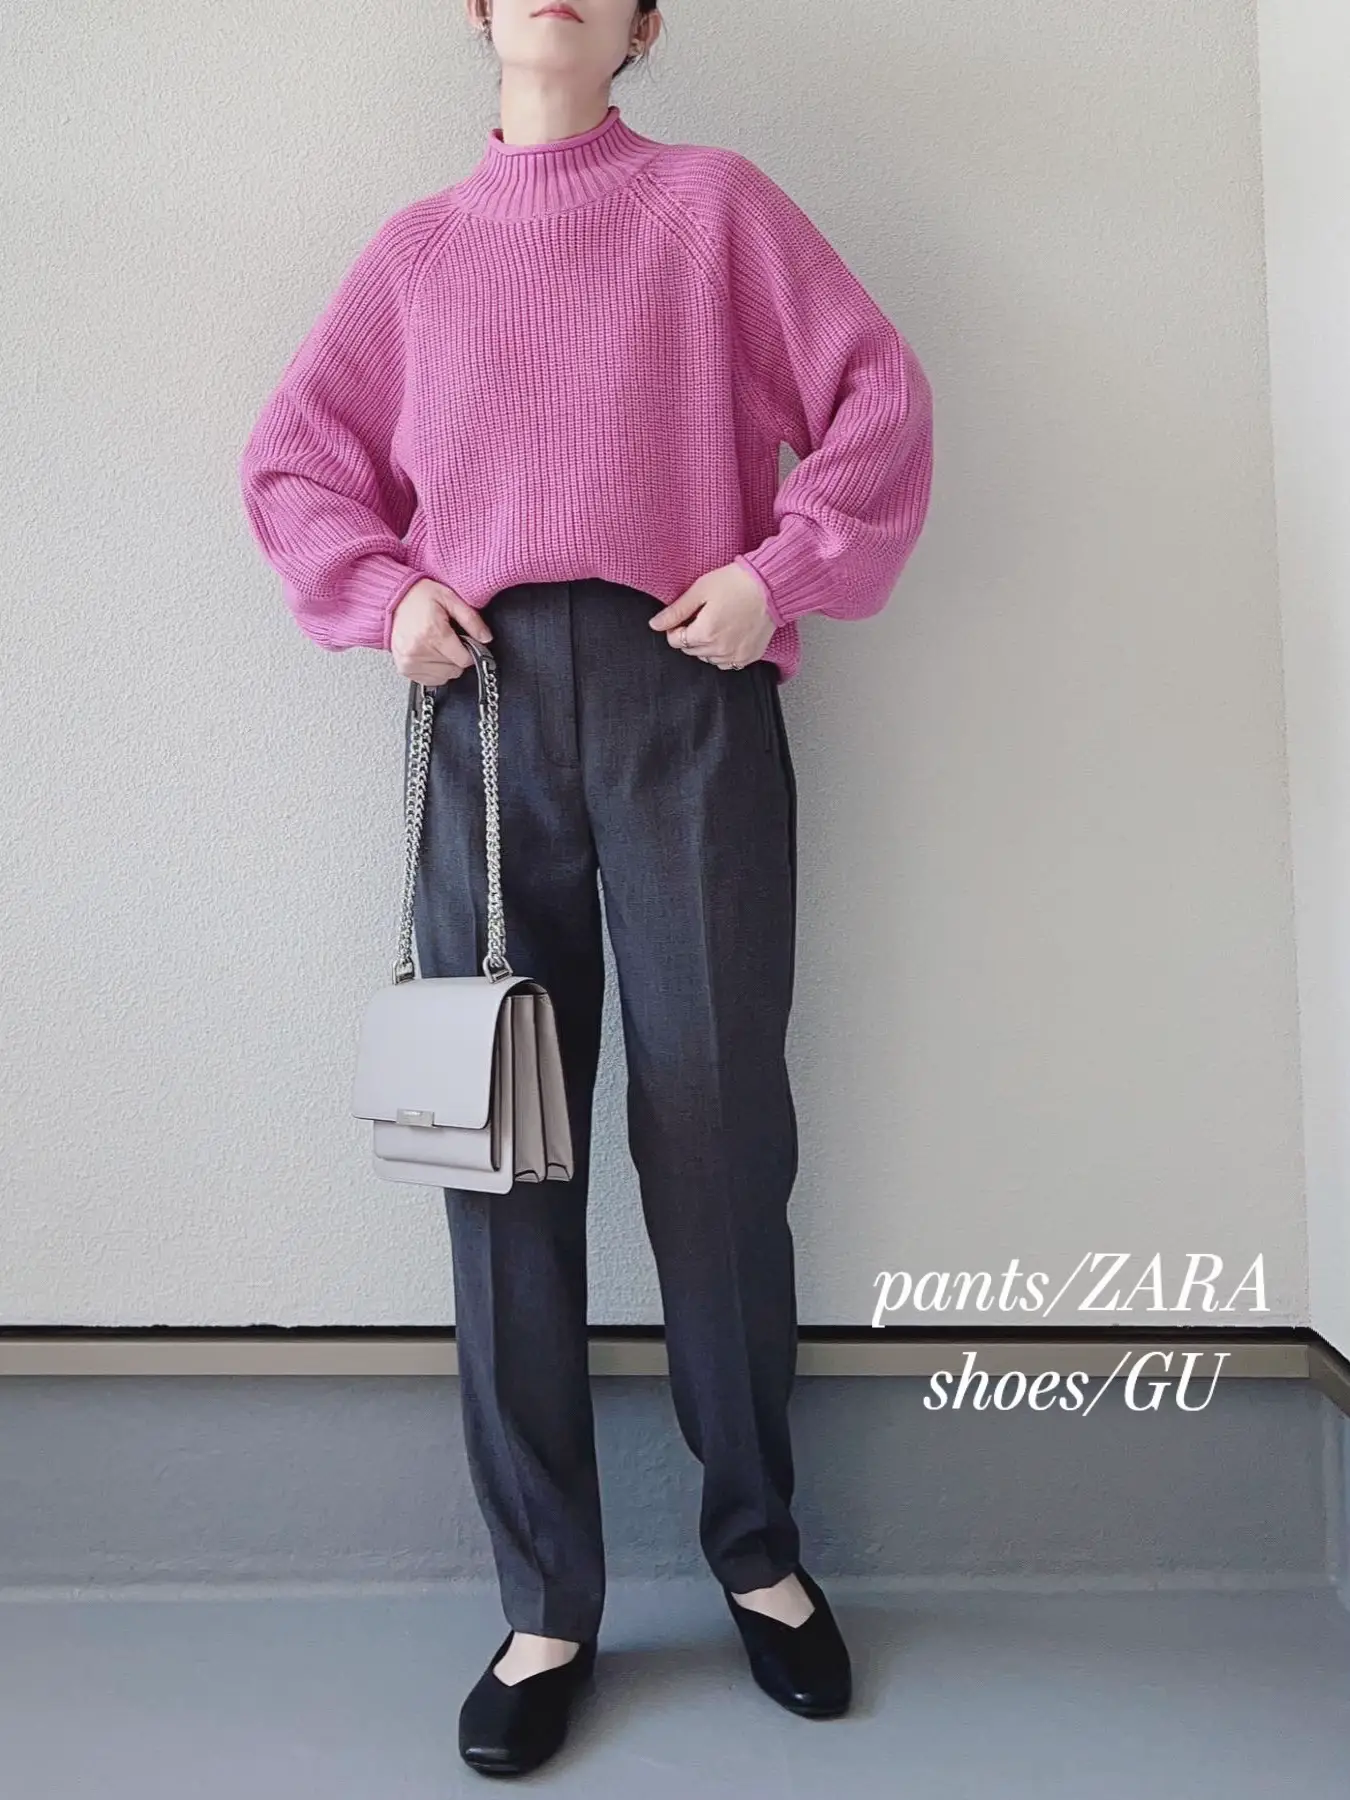 【大きいサイズ3L】アラン編みがおしゃれな♡秋ピンクニットアップ新品☆フレア袖